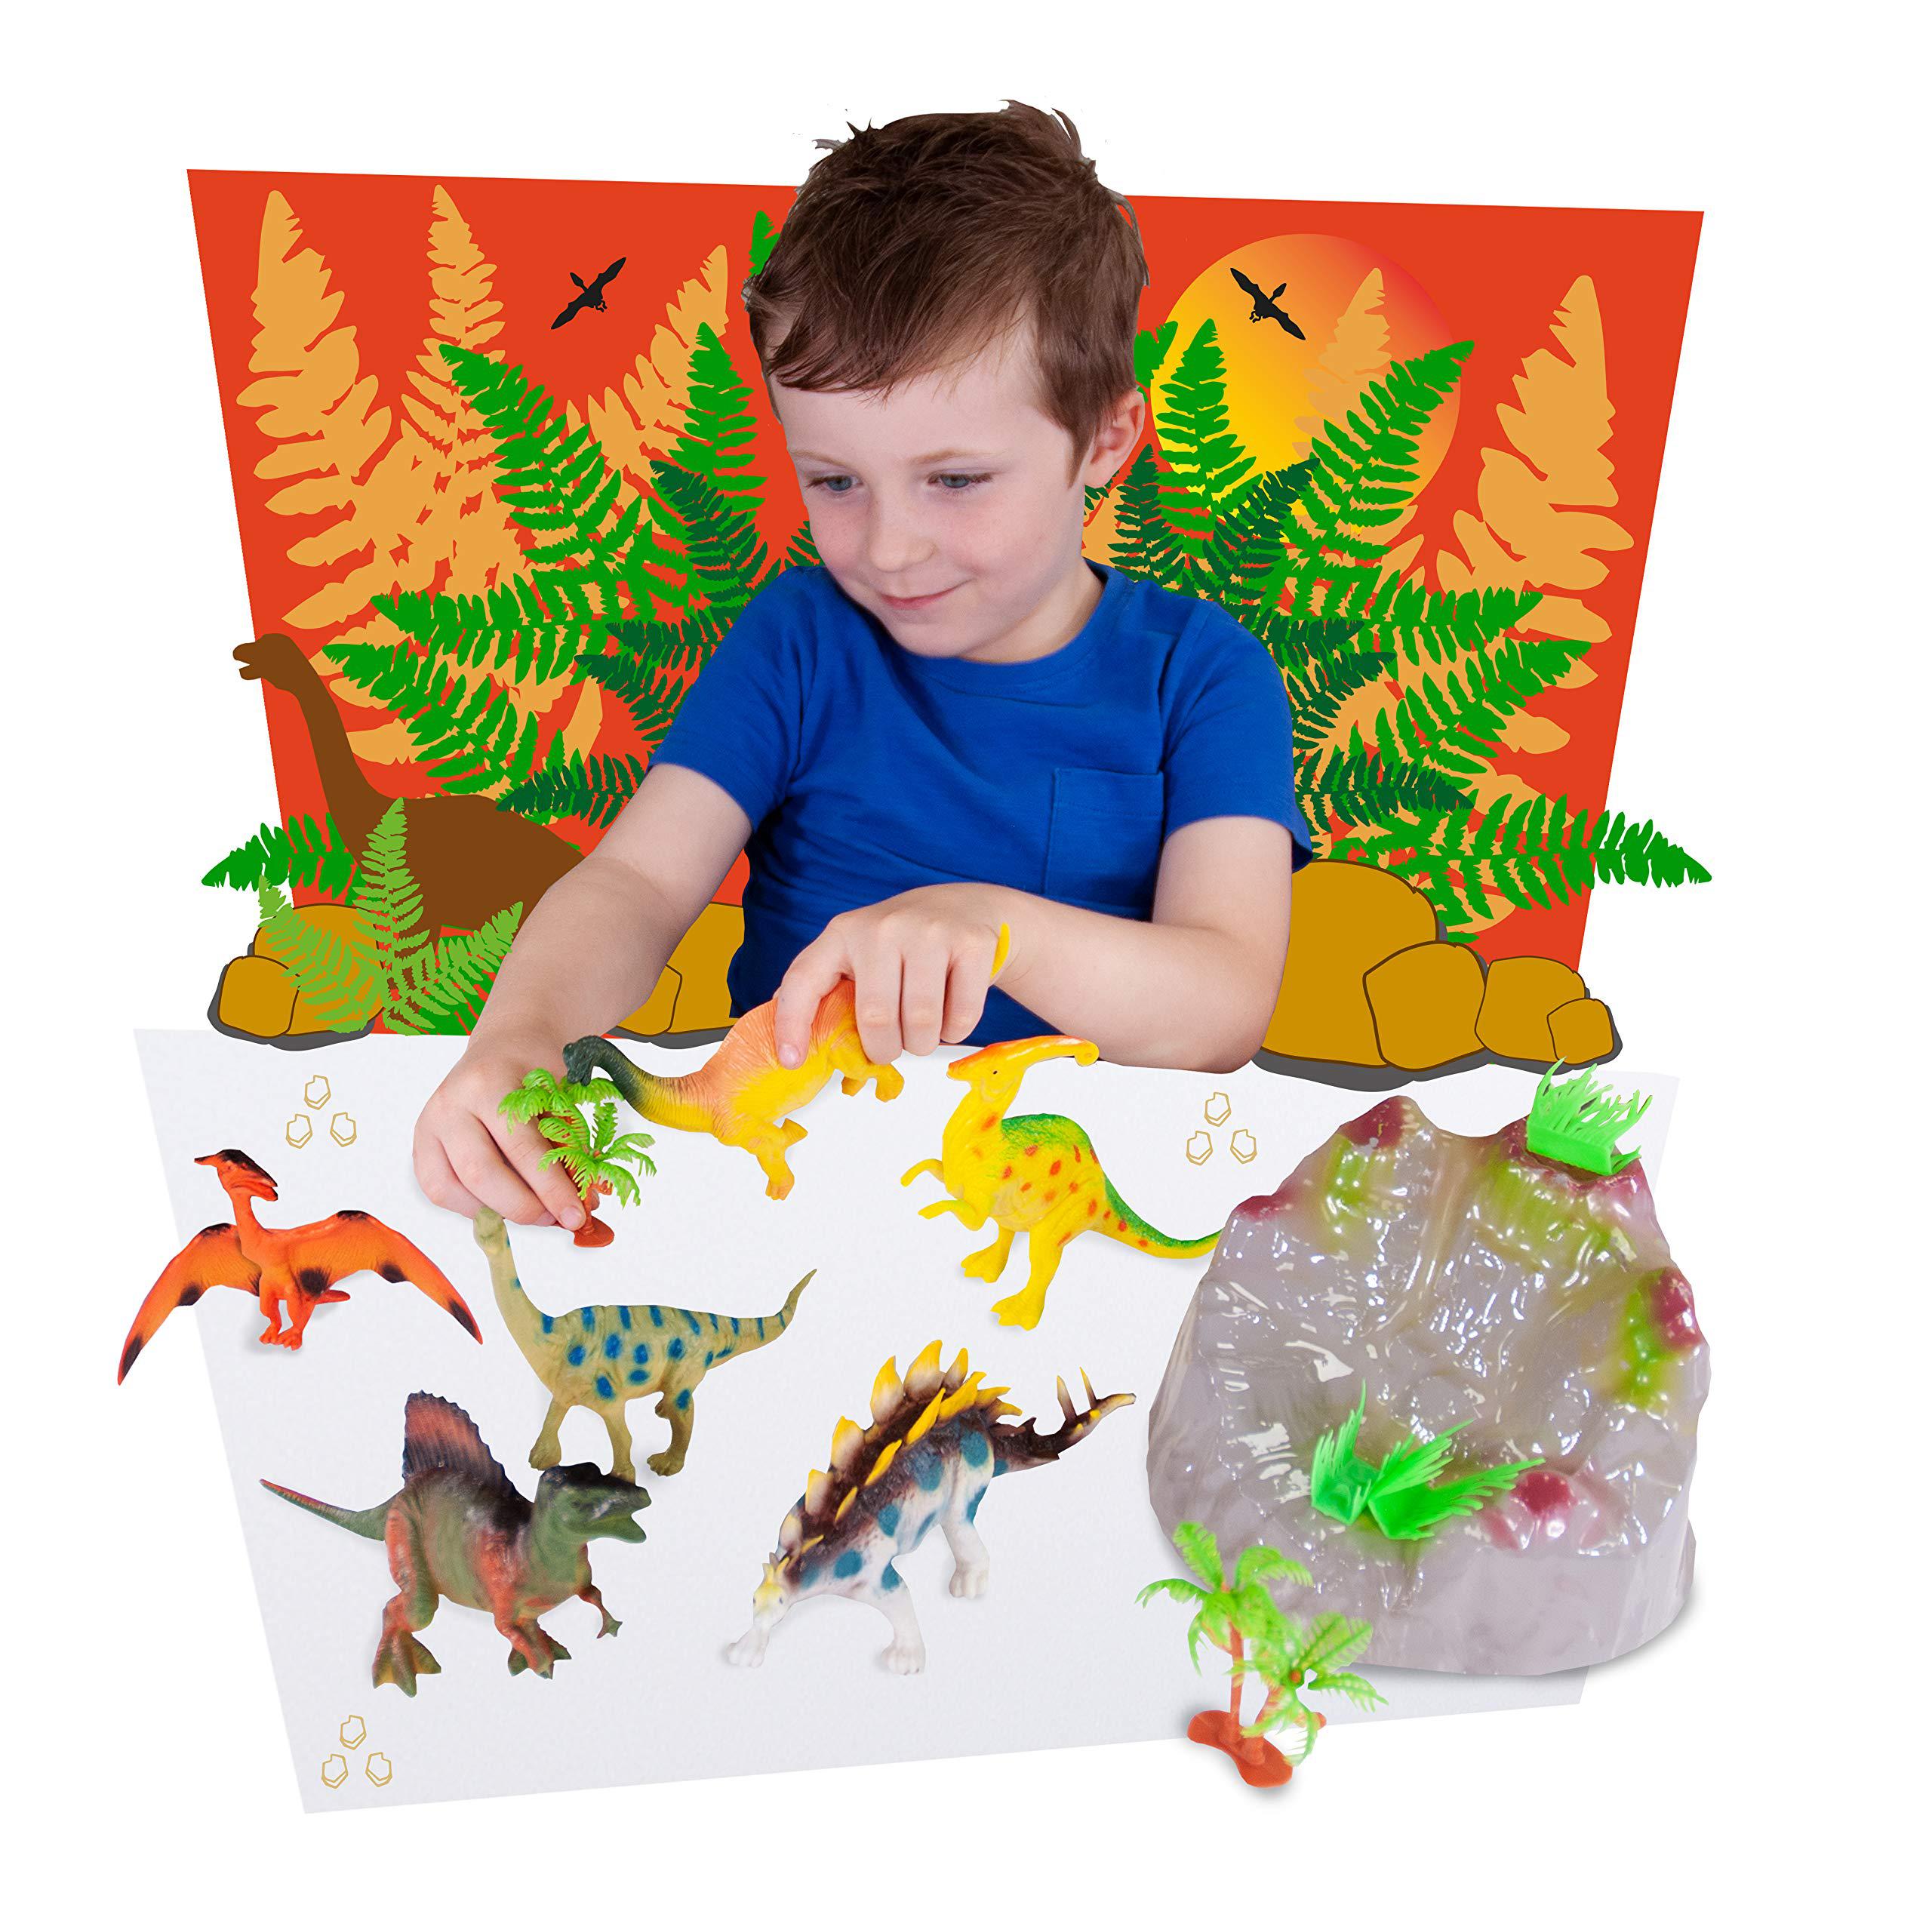 deluxebase ltd tub playsets - dinosaur toys. fantastic dinosaur toy set for kids from deluxebase. set includes stegosaurus, pterodactyl, par